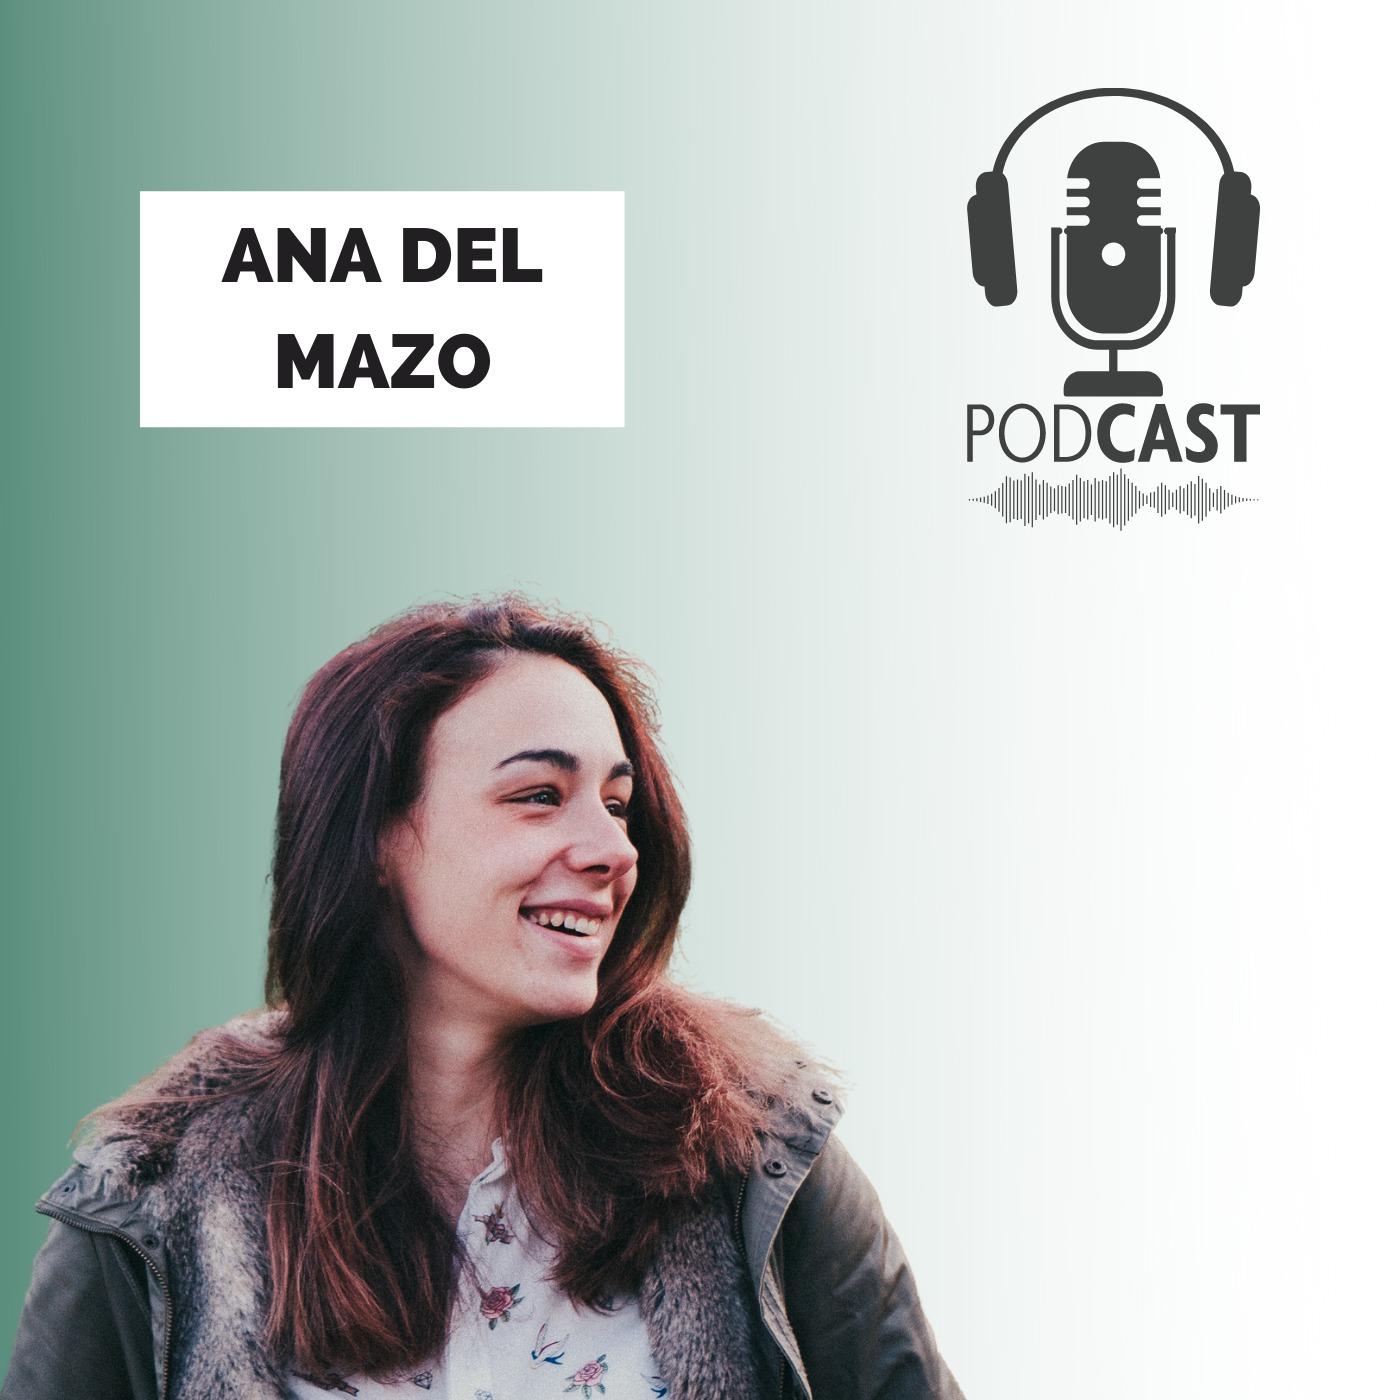 Ana del Mazo